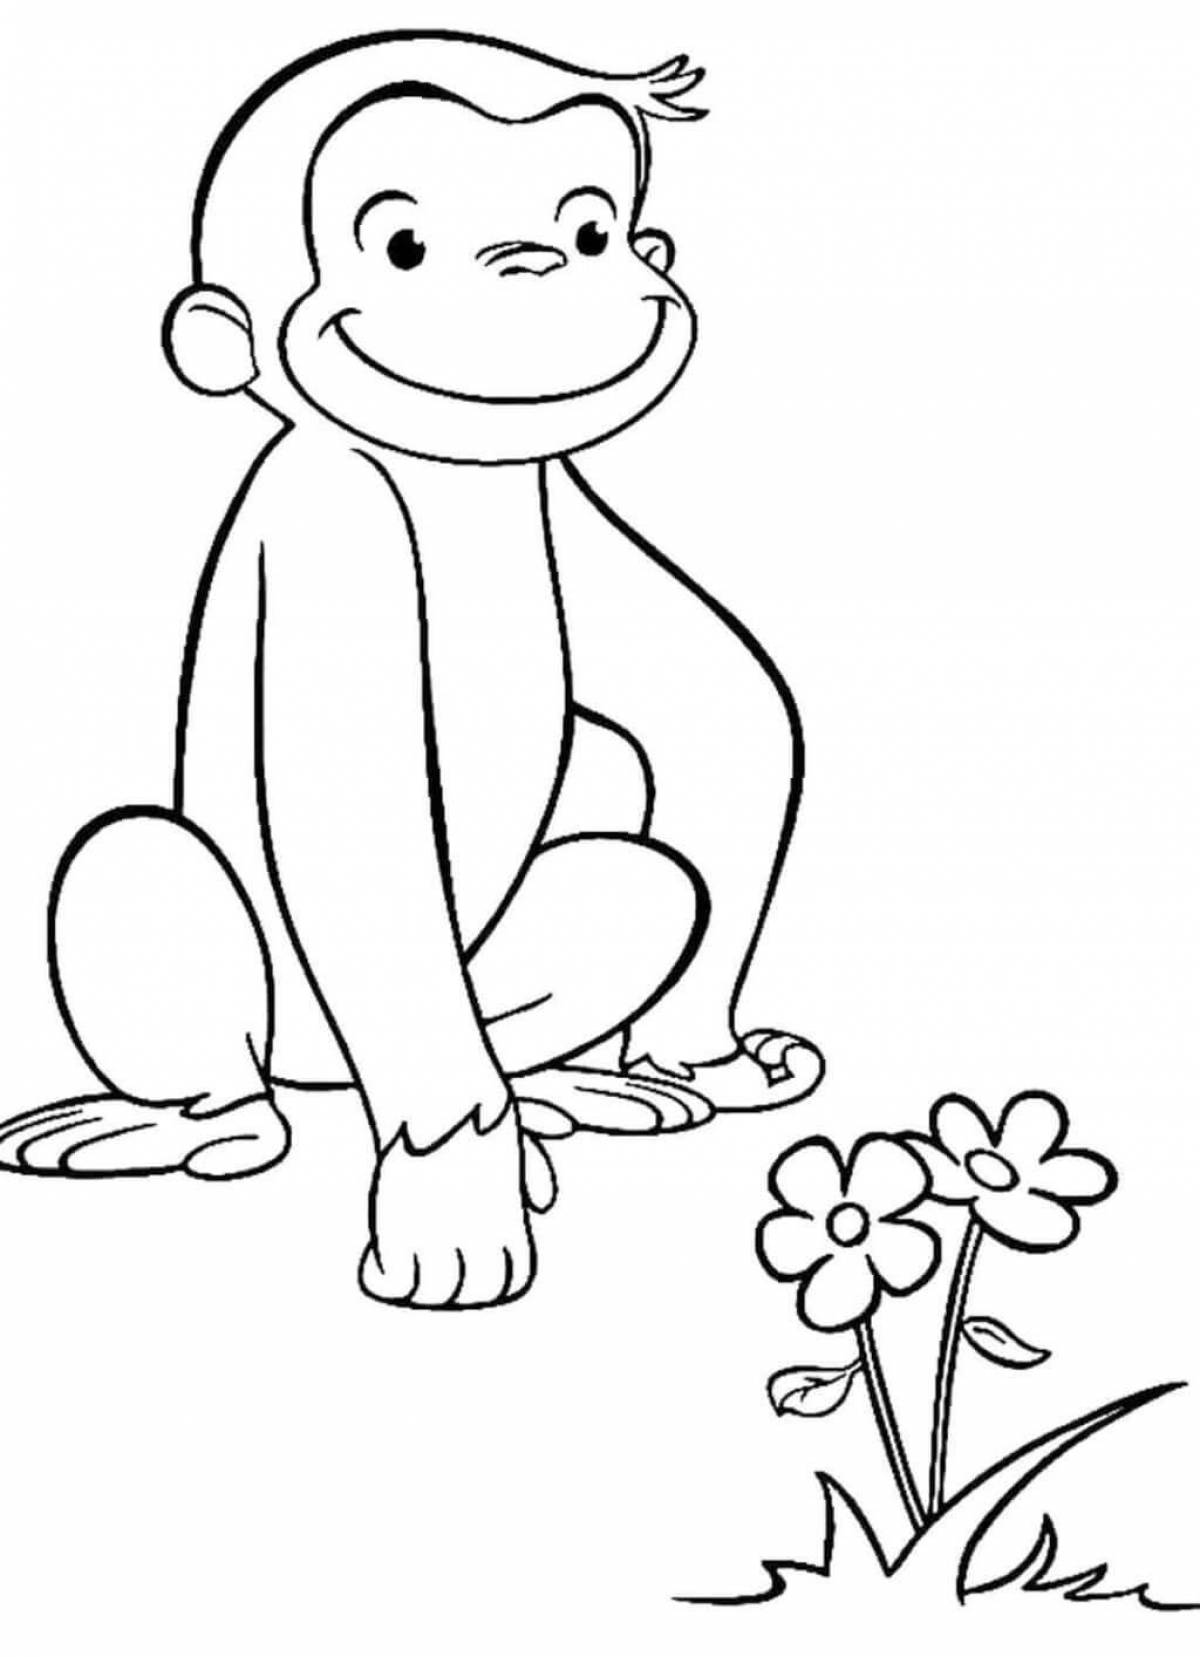 Озорная раскраска обезьяна для детей